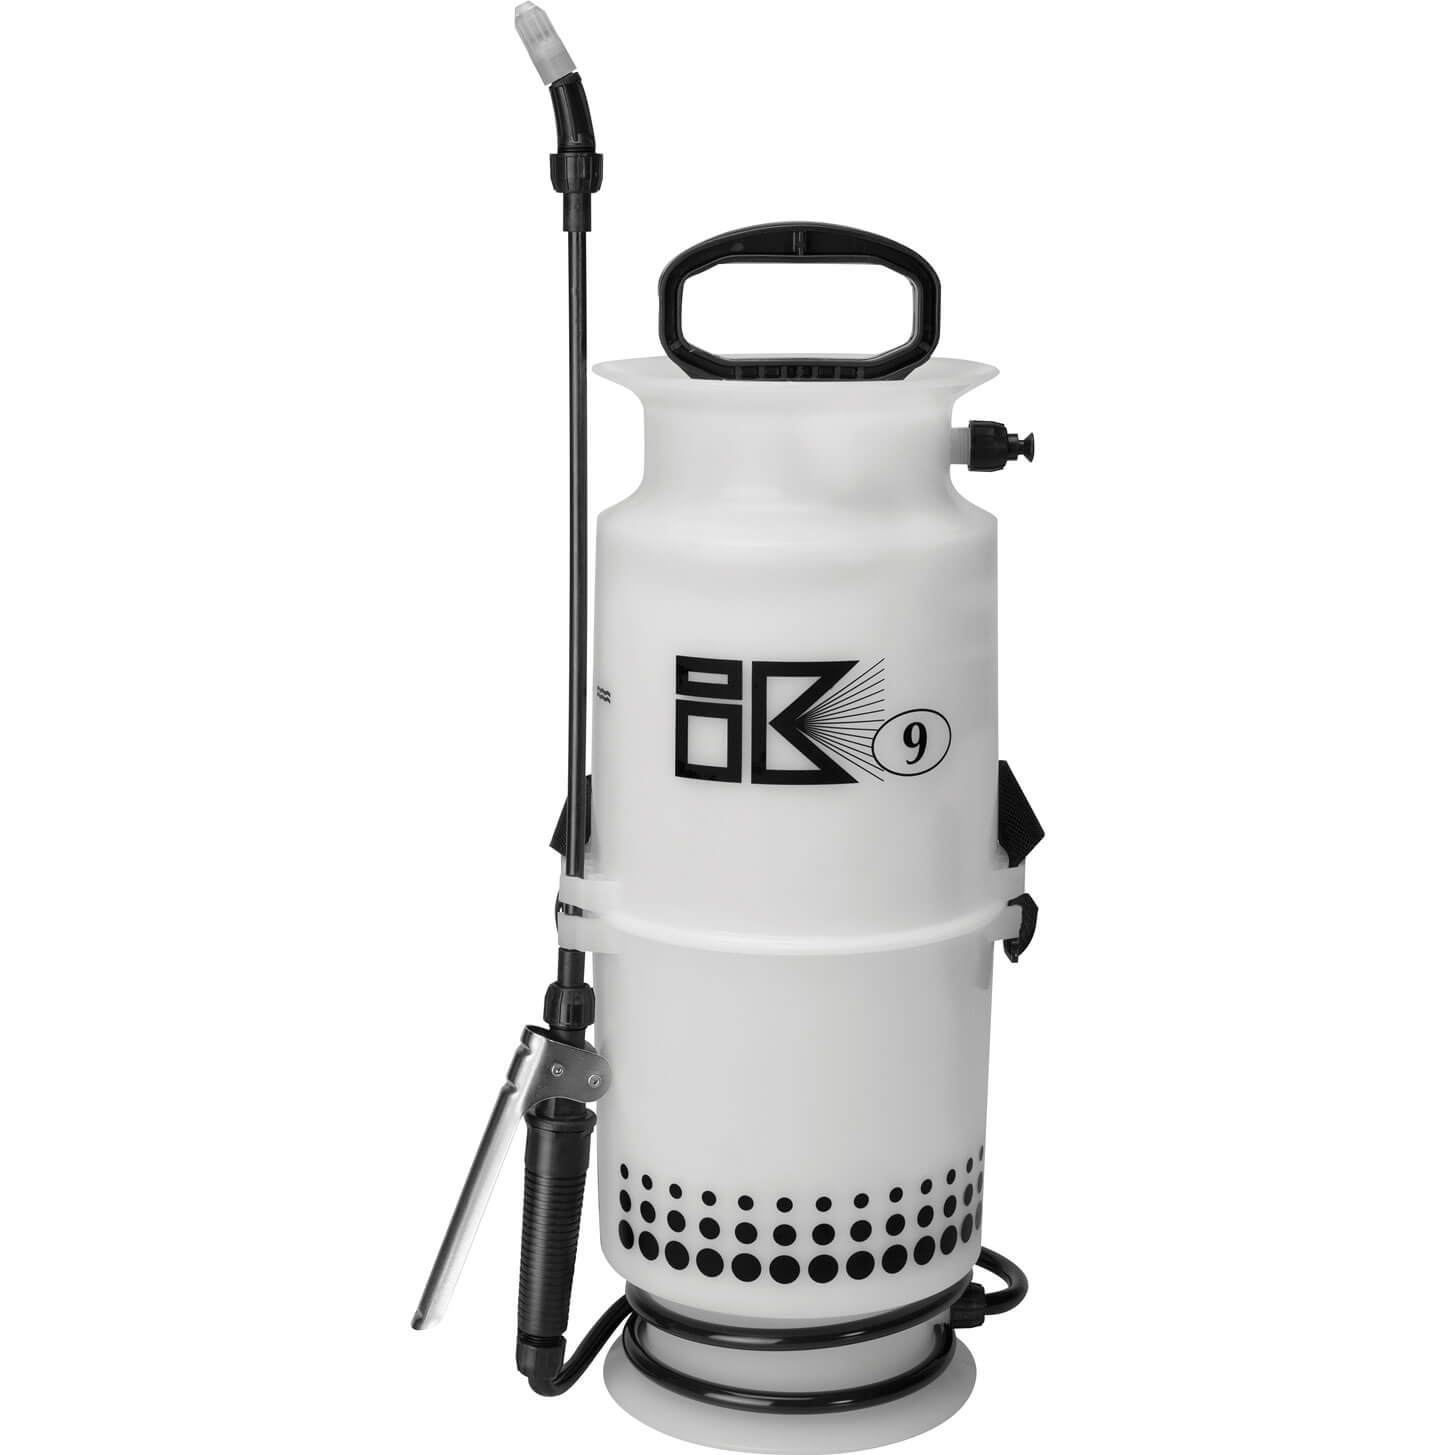 Matabi IK Water Pressure Sprayer 6l